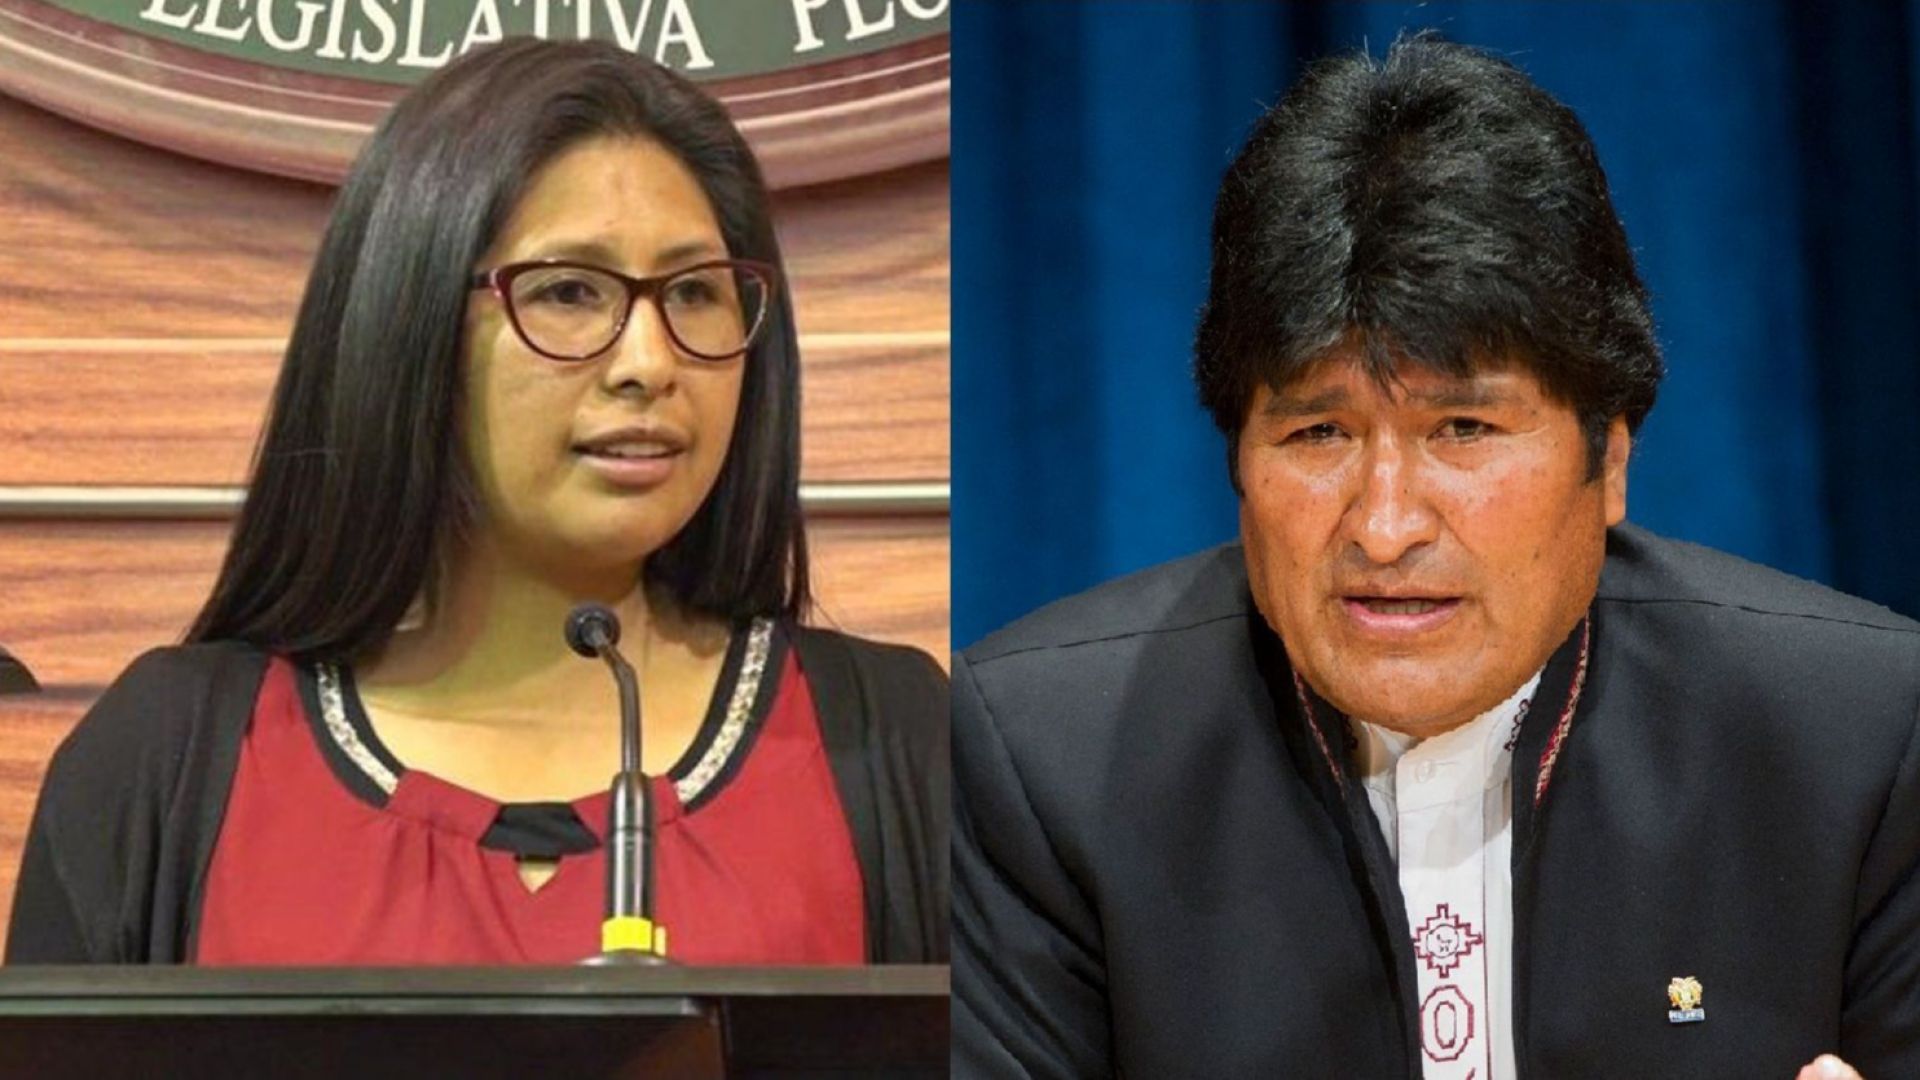 Ево срещу Ева: В Боливия се появява ново поколение политици